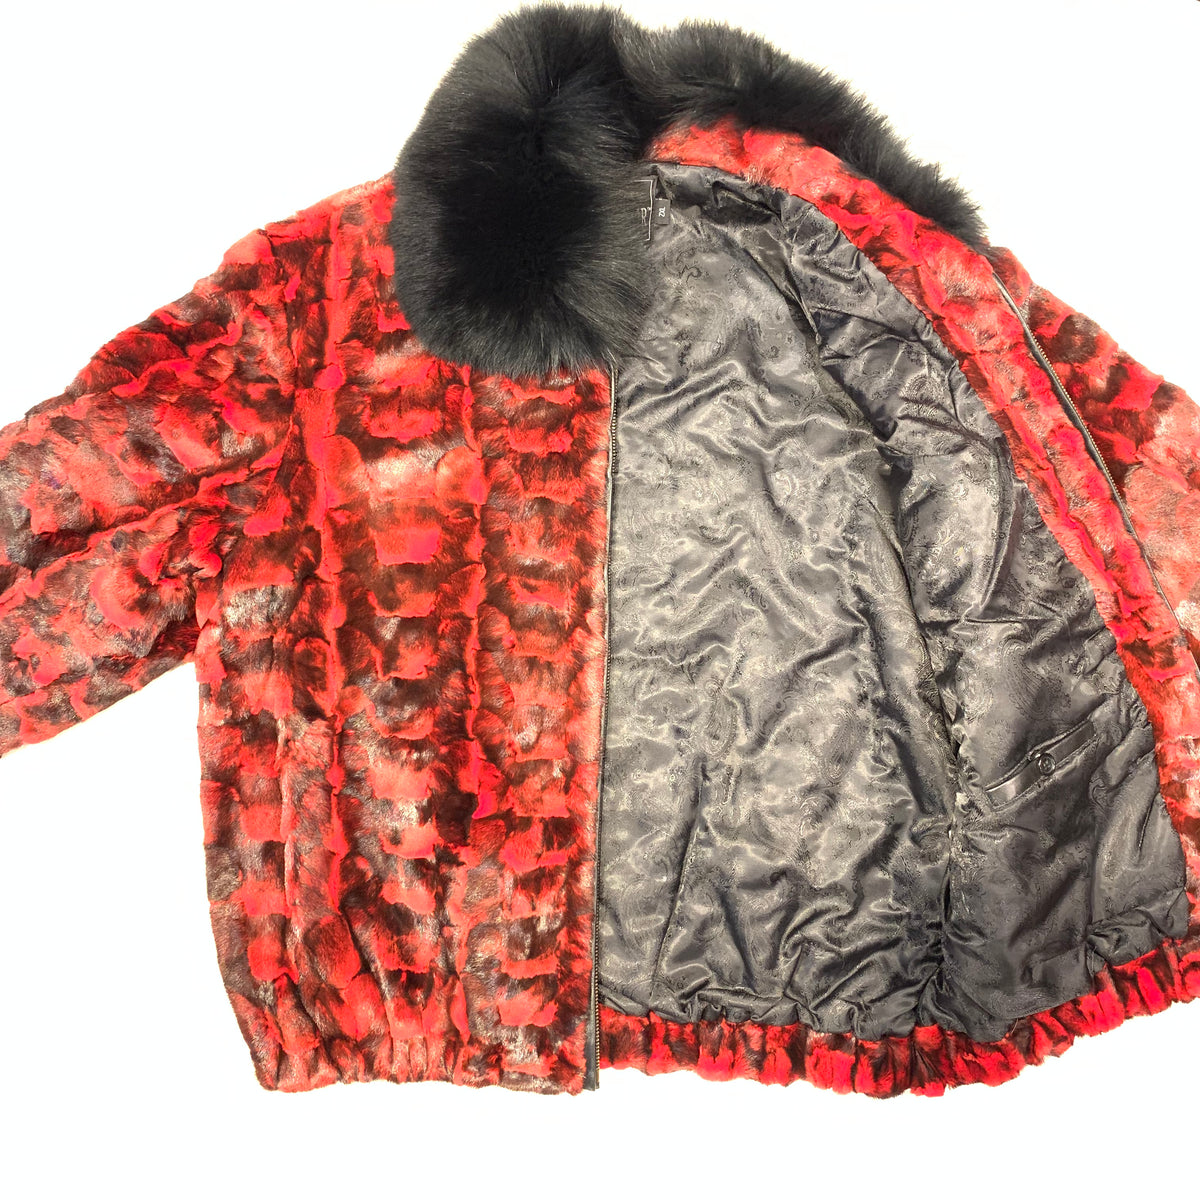 Kashani Full Mink Fur Bomber Jacket for Men Red Black / L